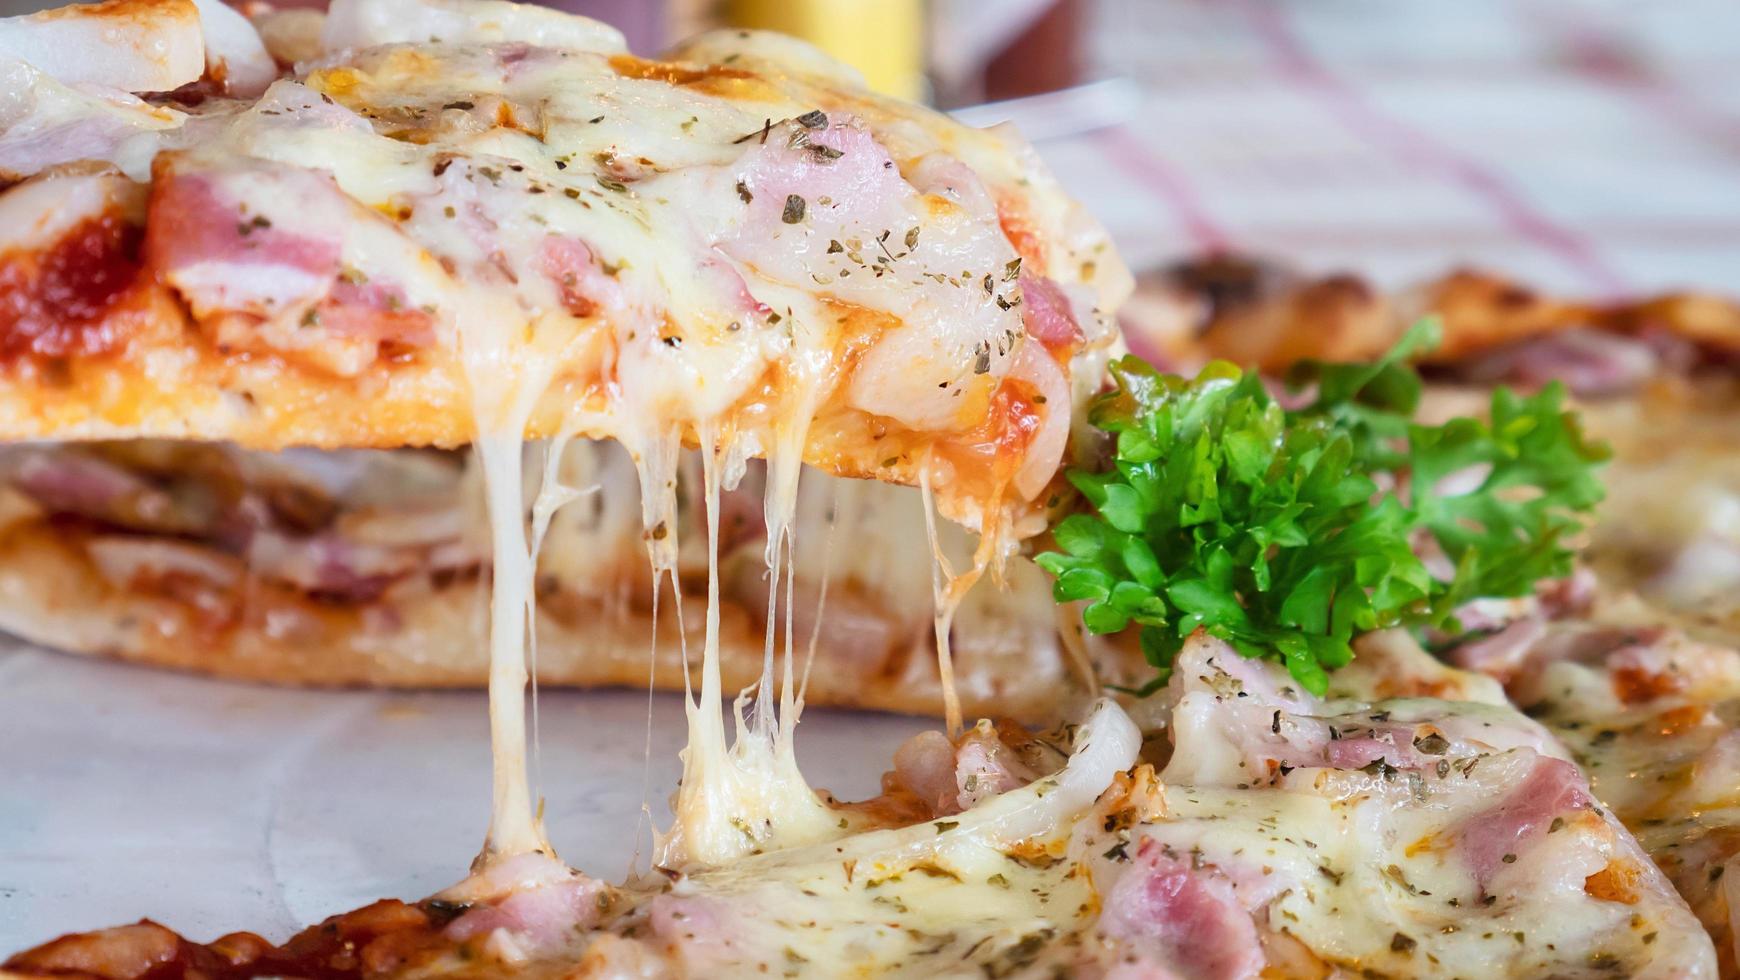 Almuerzo familiar comiendo pizza receta de jamón y queso - gente con favor concepto de plato italiano foto